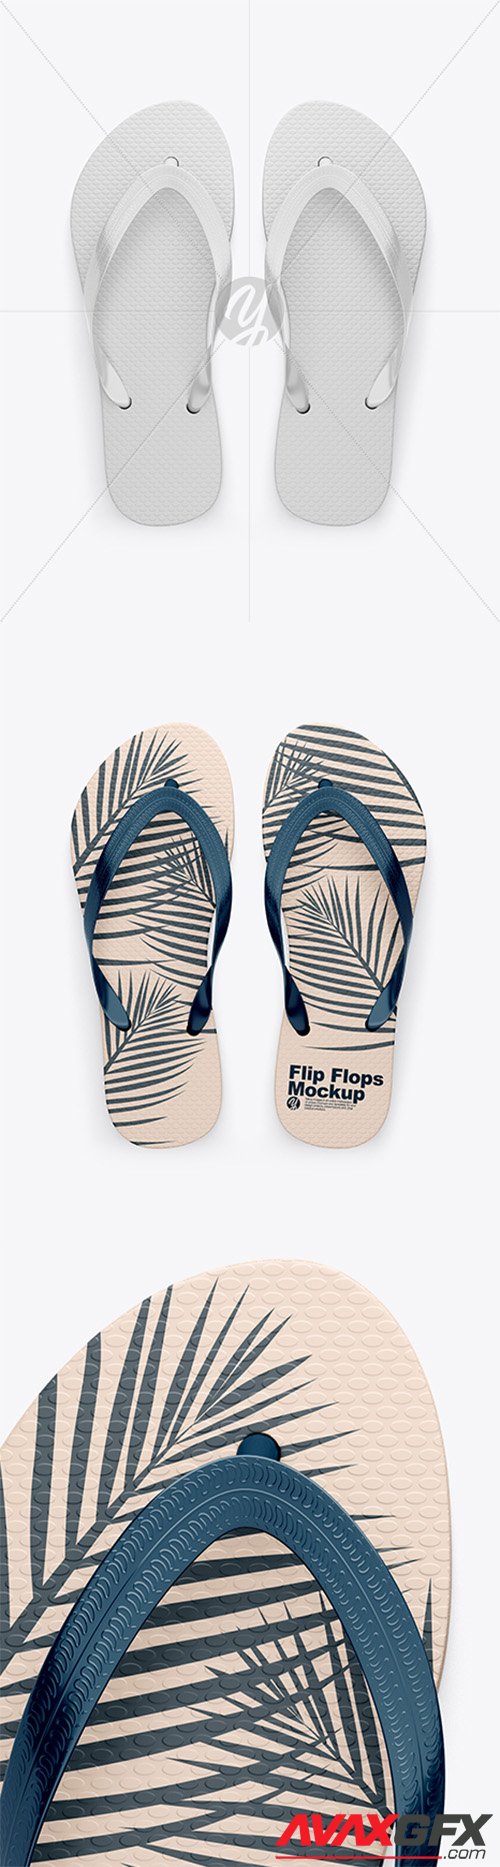 Flip Flops Mockup - Top View 28288